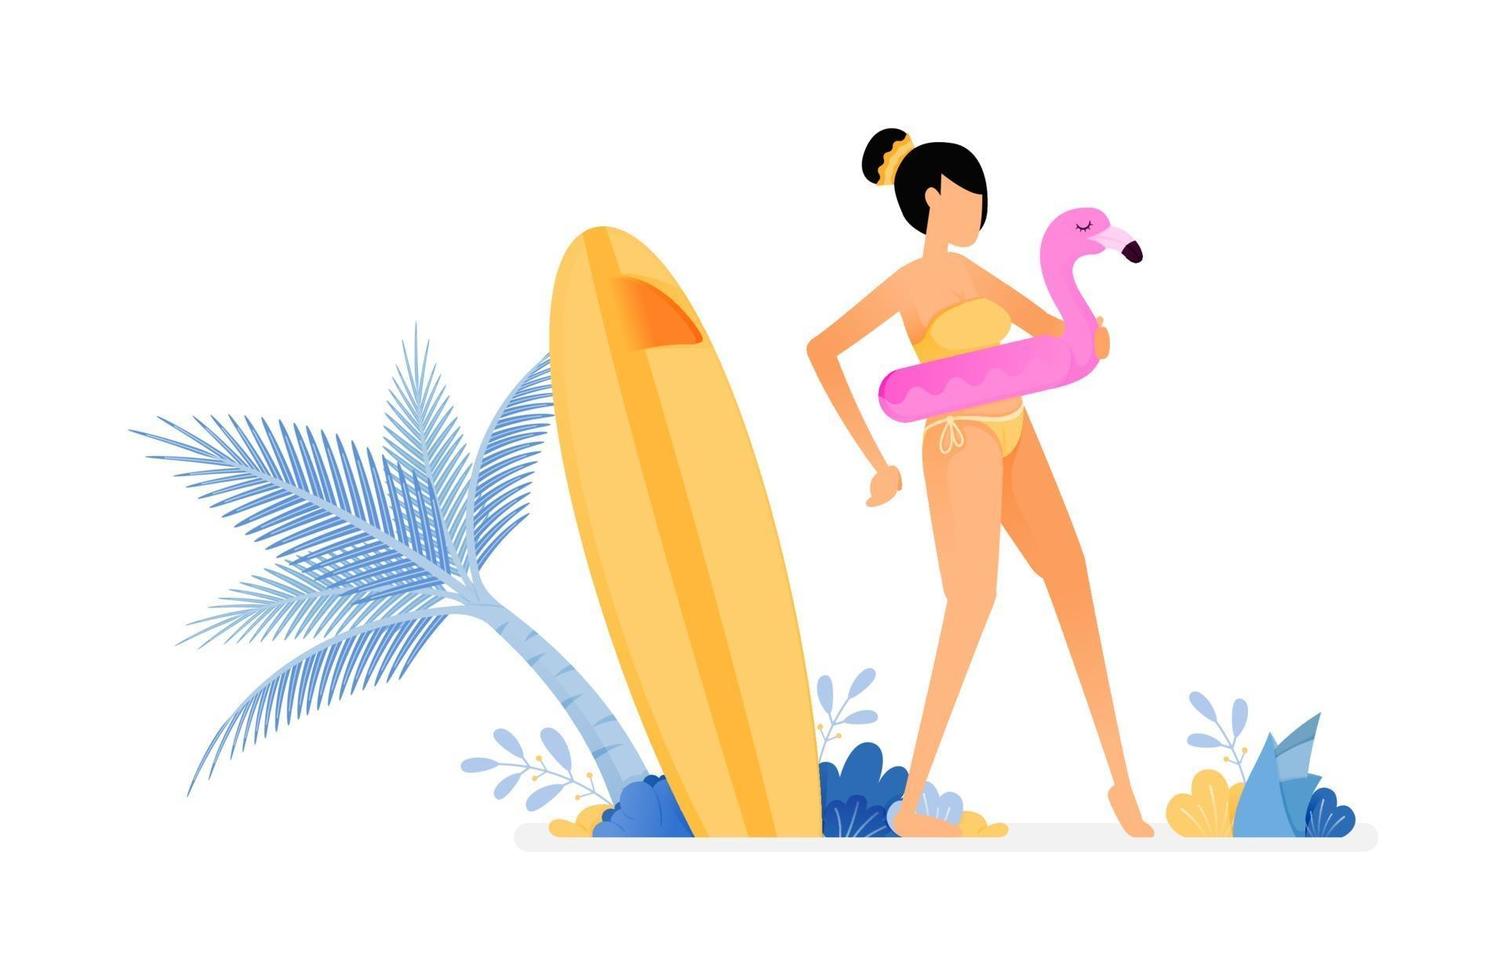 ilustração de feriado de mulher usando bóia de flamingo e se preparando para nadar, prancha de surf perto de coqueiro desenho vetorial pode ser para cartazes banners anúncios sites web marketing móvel vetor